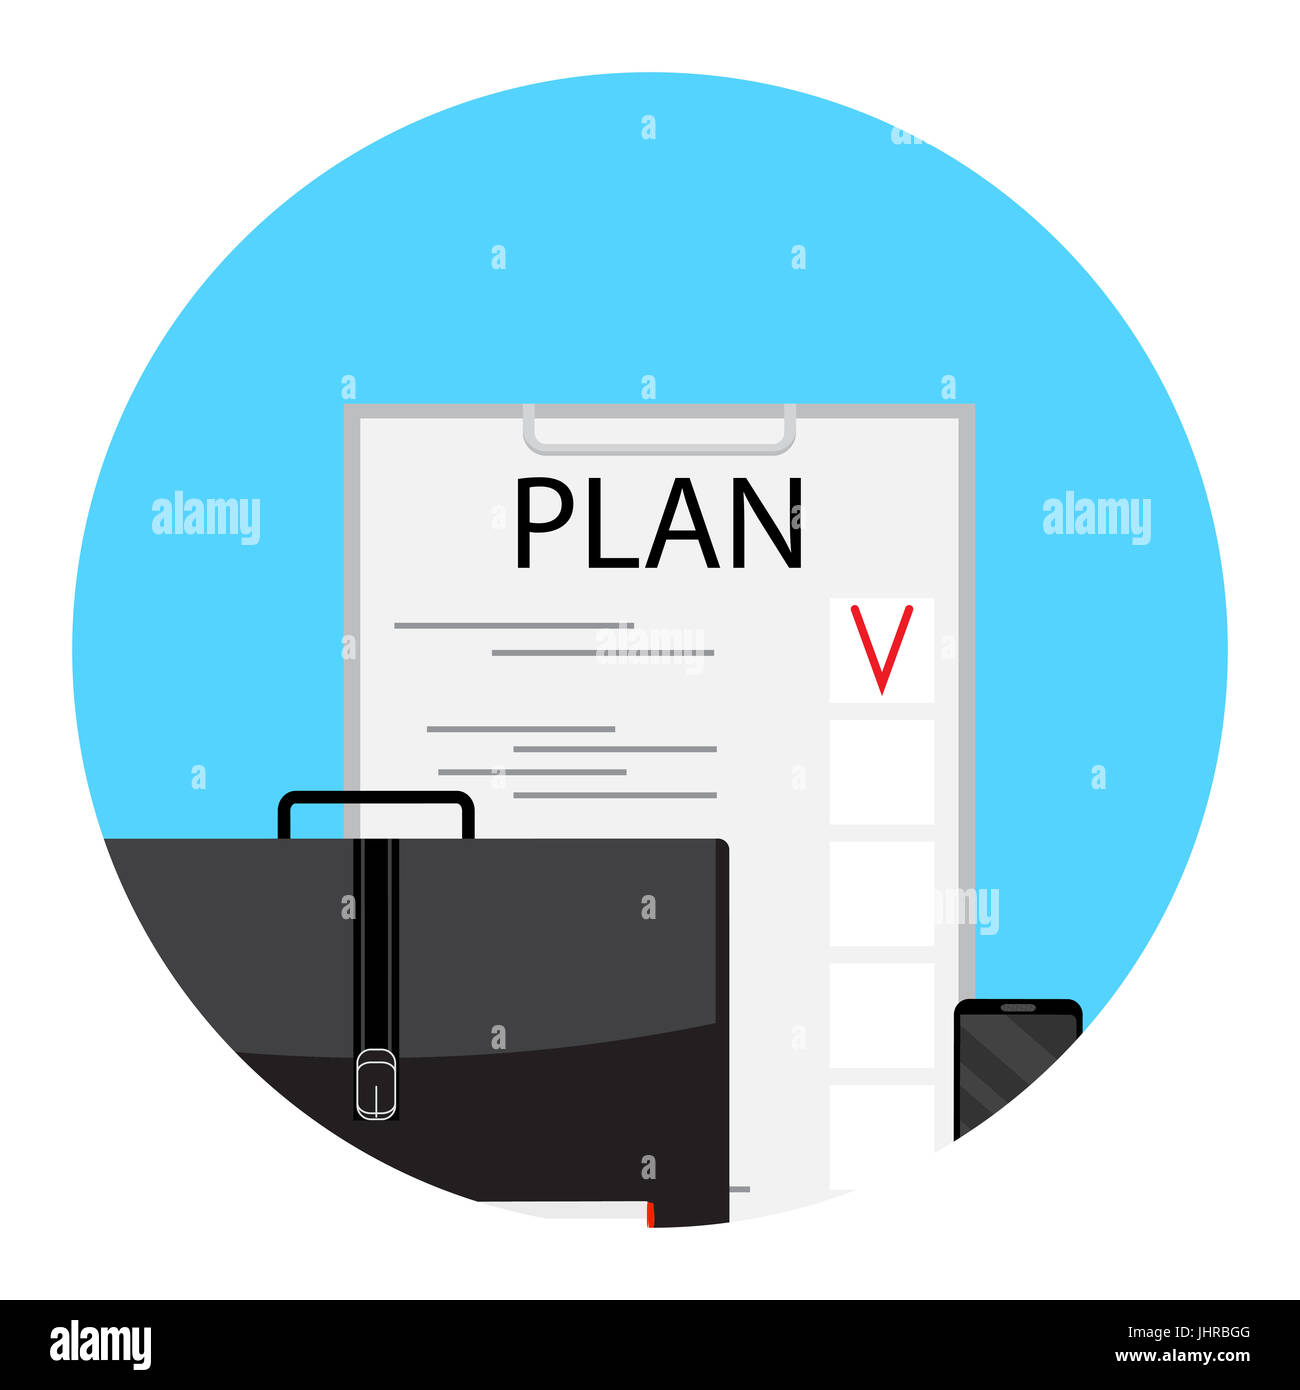 Plan d'affaires et processus de planification de projet, idée, vector illustration Banque D'Images